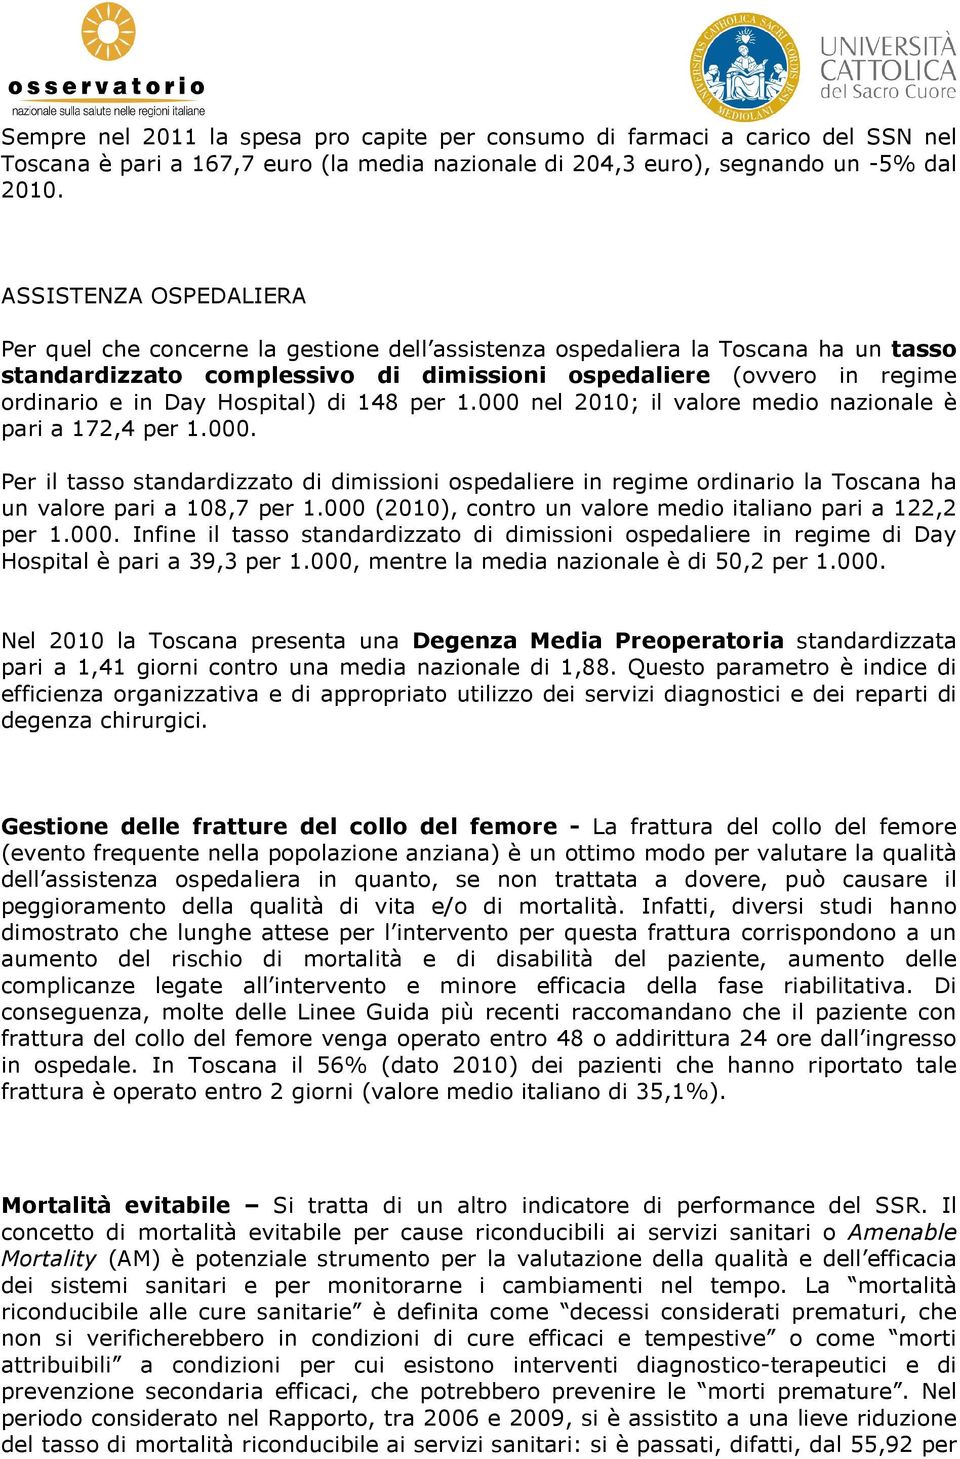 Hospital) di 148 per 1.000 nel 2010; il valore medio nazionale è pari a 172,4 per 1.000. Per il tasso standardizzato di dimissioni ospedaliere in regime ordinario la Toscana ha un valore pari a 108,7 per 1.